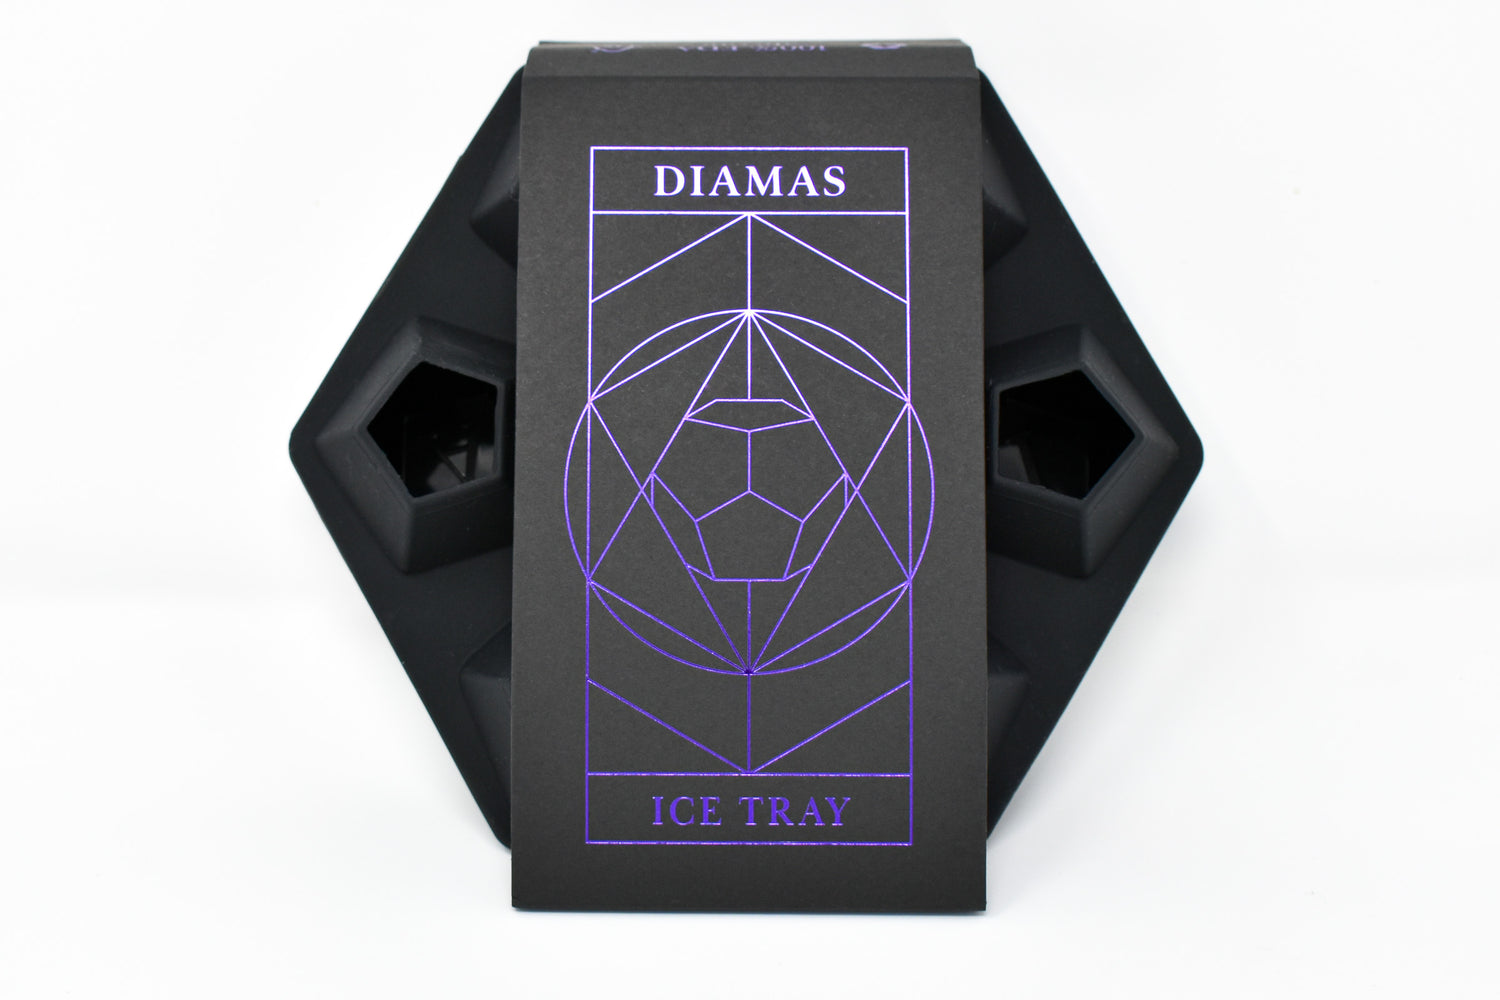 DIAMAS Signature Ice Tray Gift Set